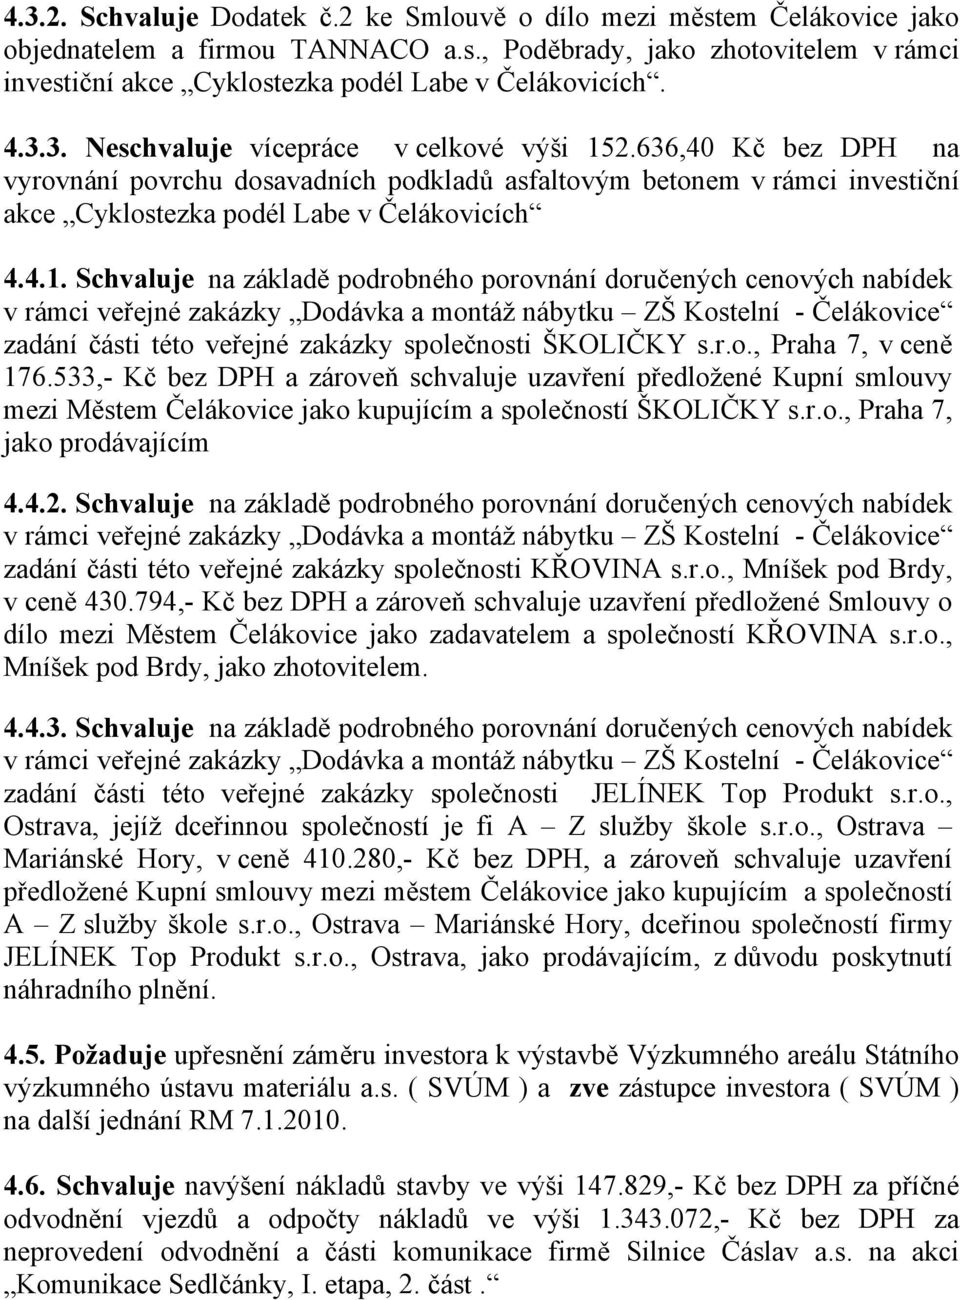 2.636,40 Kč bez DPH na vyrovnání povrchu dosavadních podkladů asfaltovým betonem v rámci investiční akce Cyklostezka podél Labe v Čelákovicích 4.4.1.